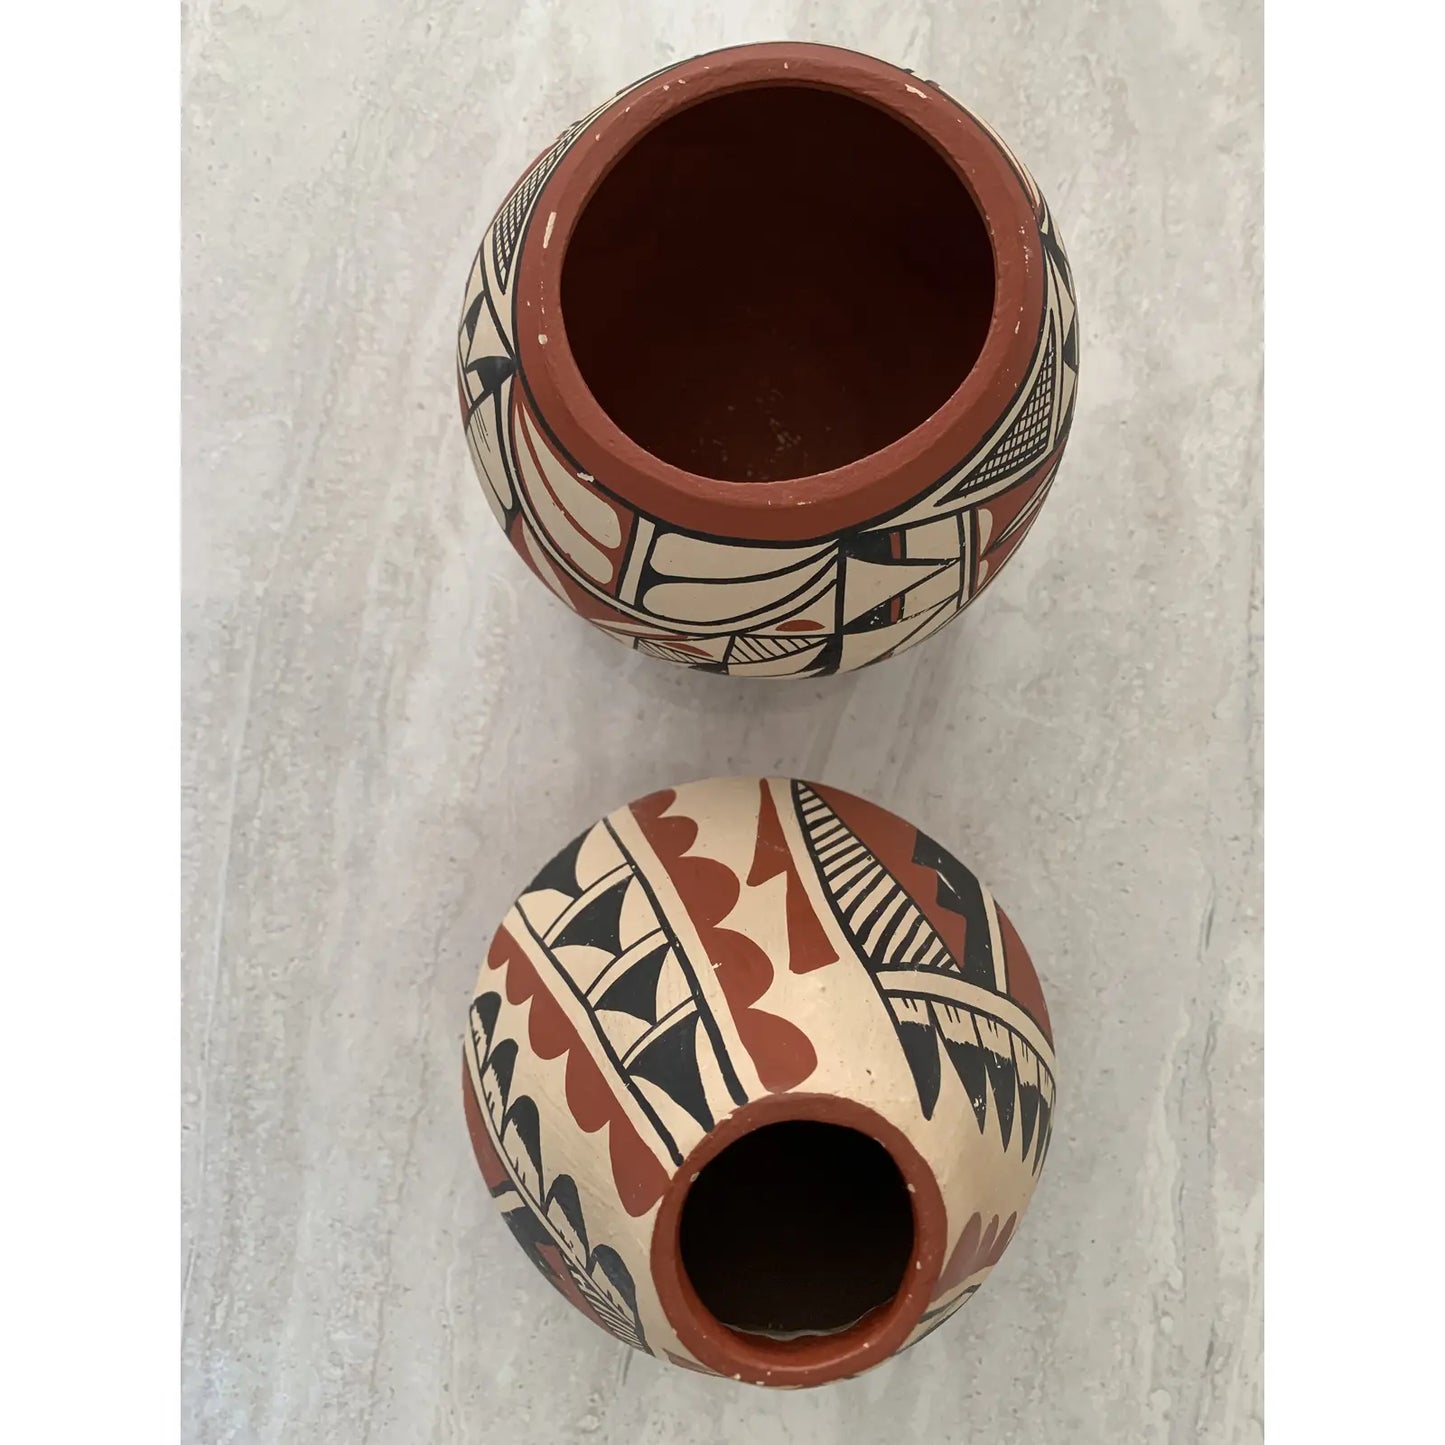 Mid 20th Century Jemez Pueblo Pottery Hand Painted Coil Pots